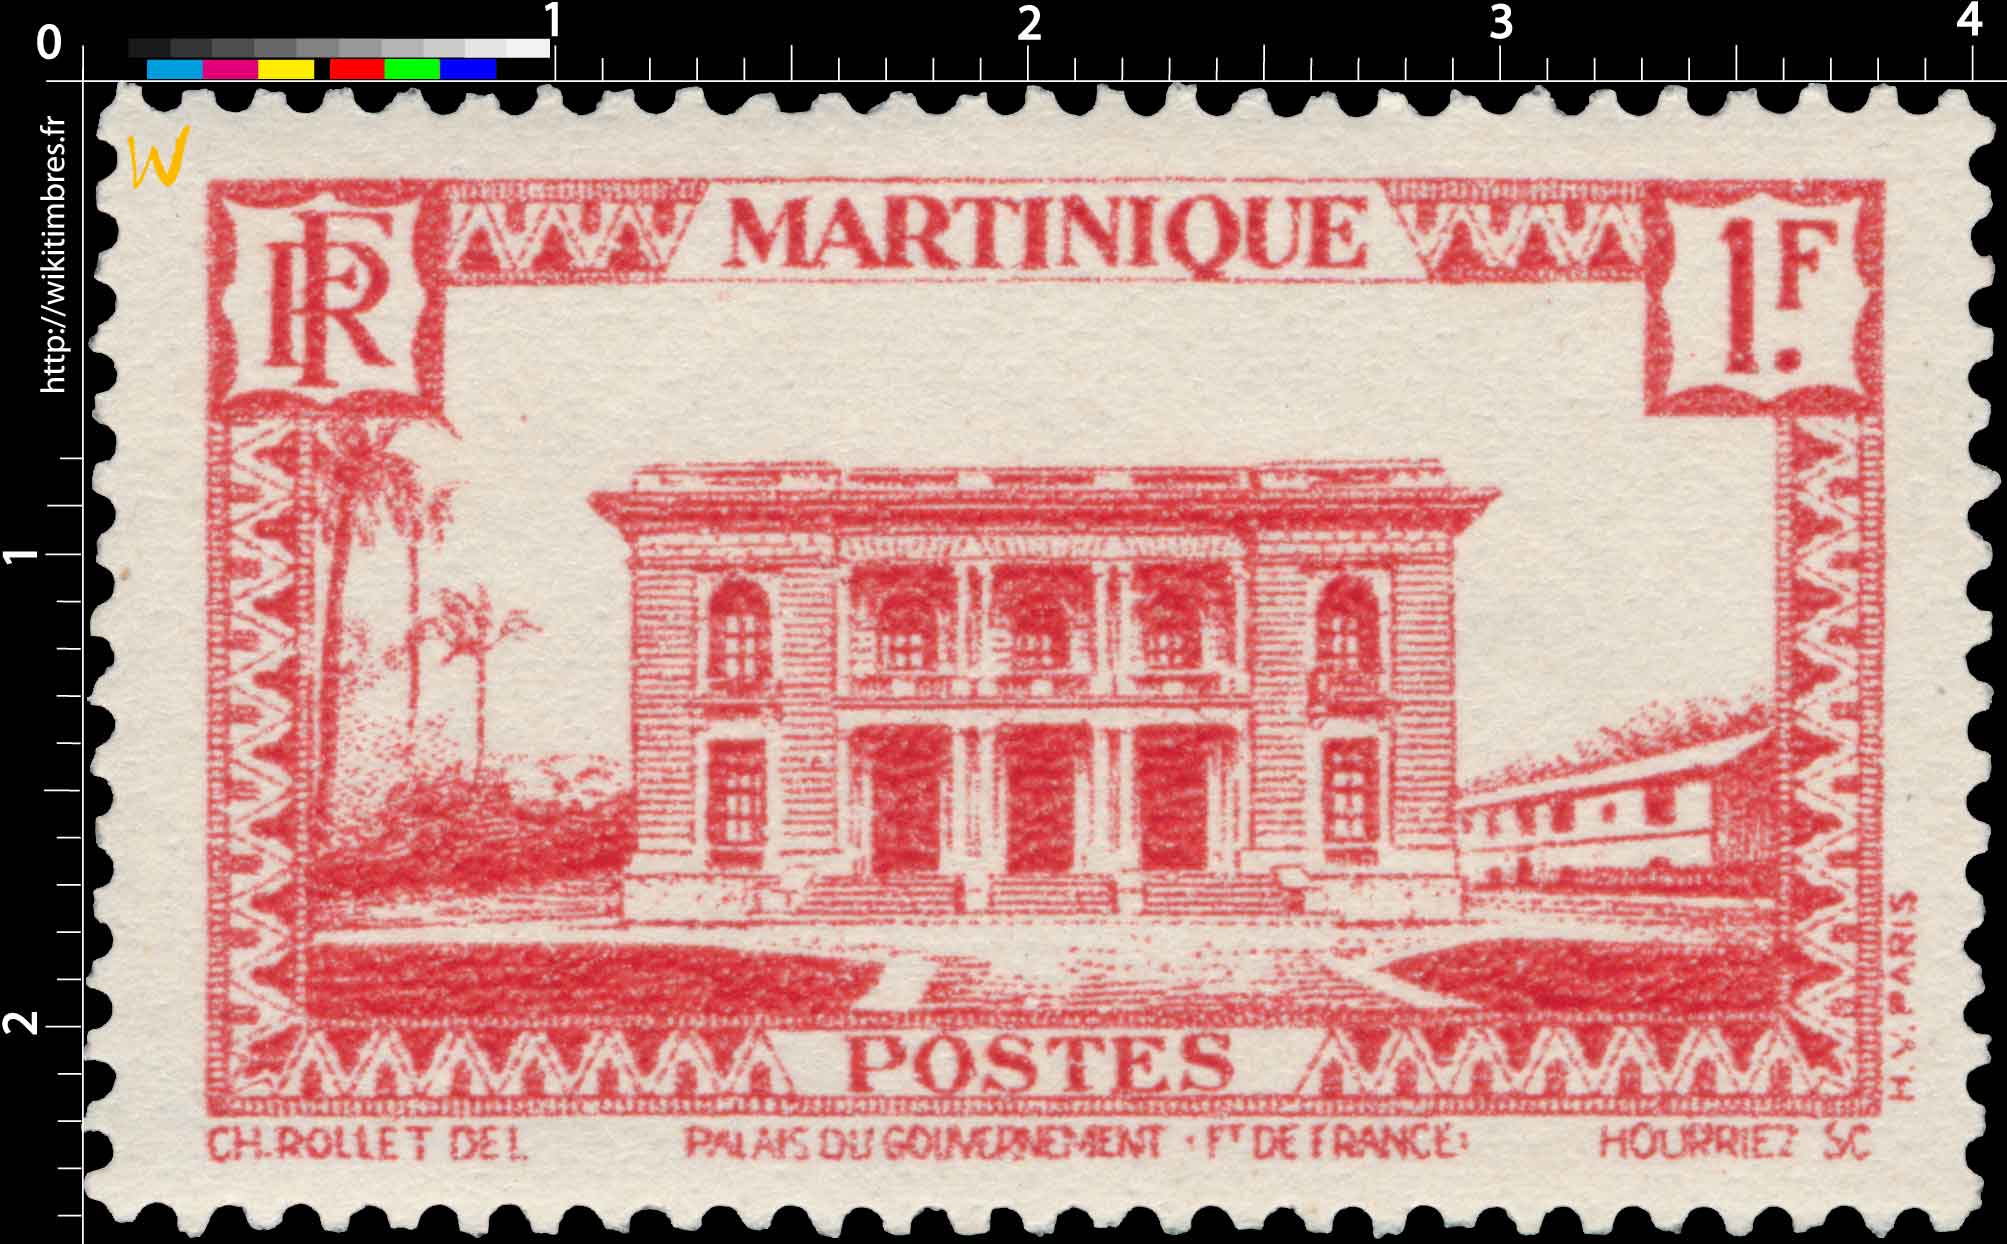 Martinique - Plais du gouvernement, Fort-de-France